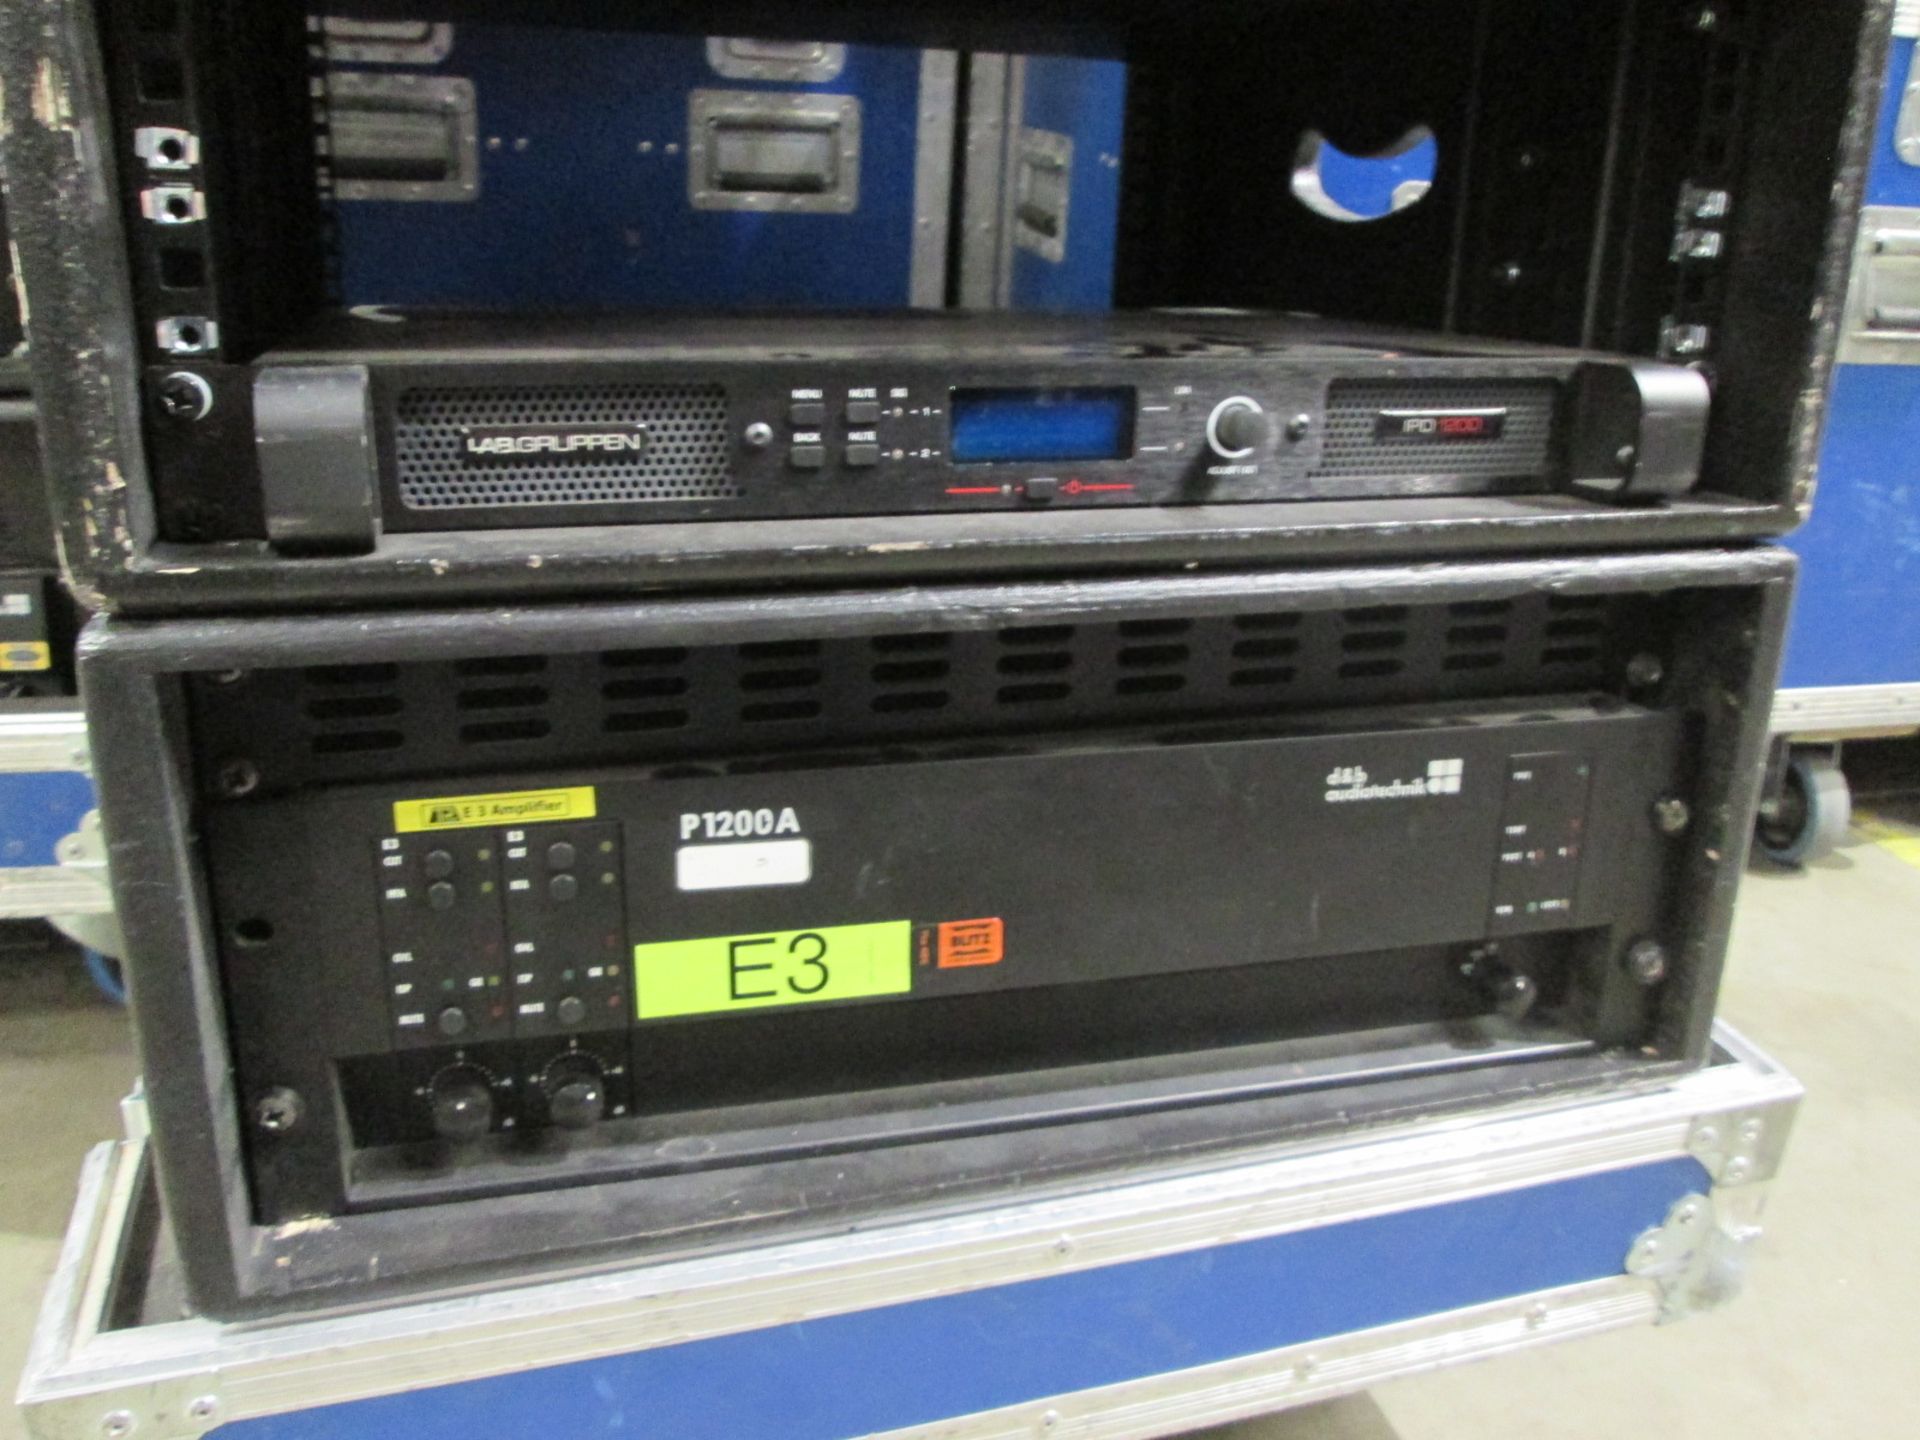 D & B Audiotecknik & Lab Gruppen Power Amplifiers. 1 off D&B P1200A amplifier, 1 off IPD 1200